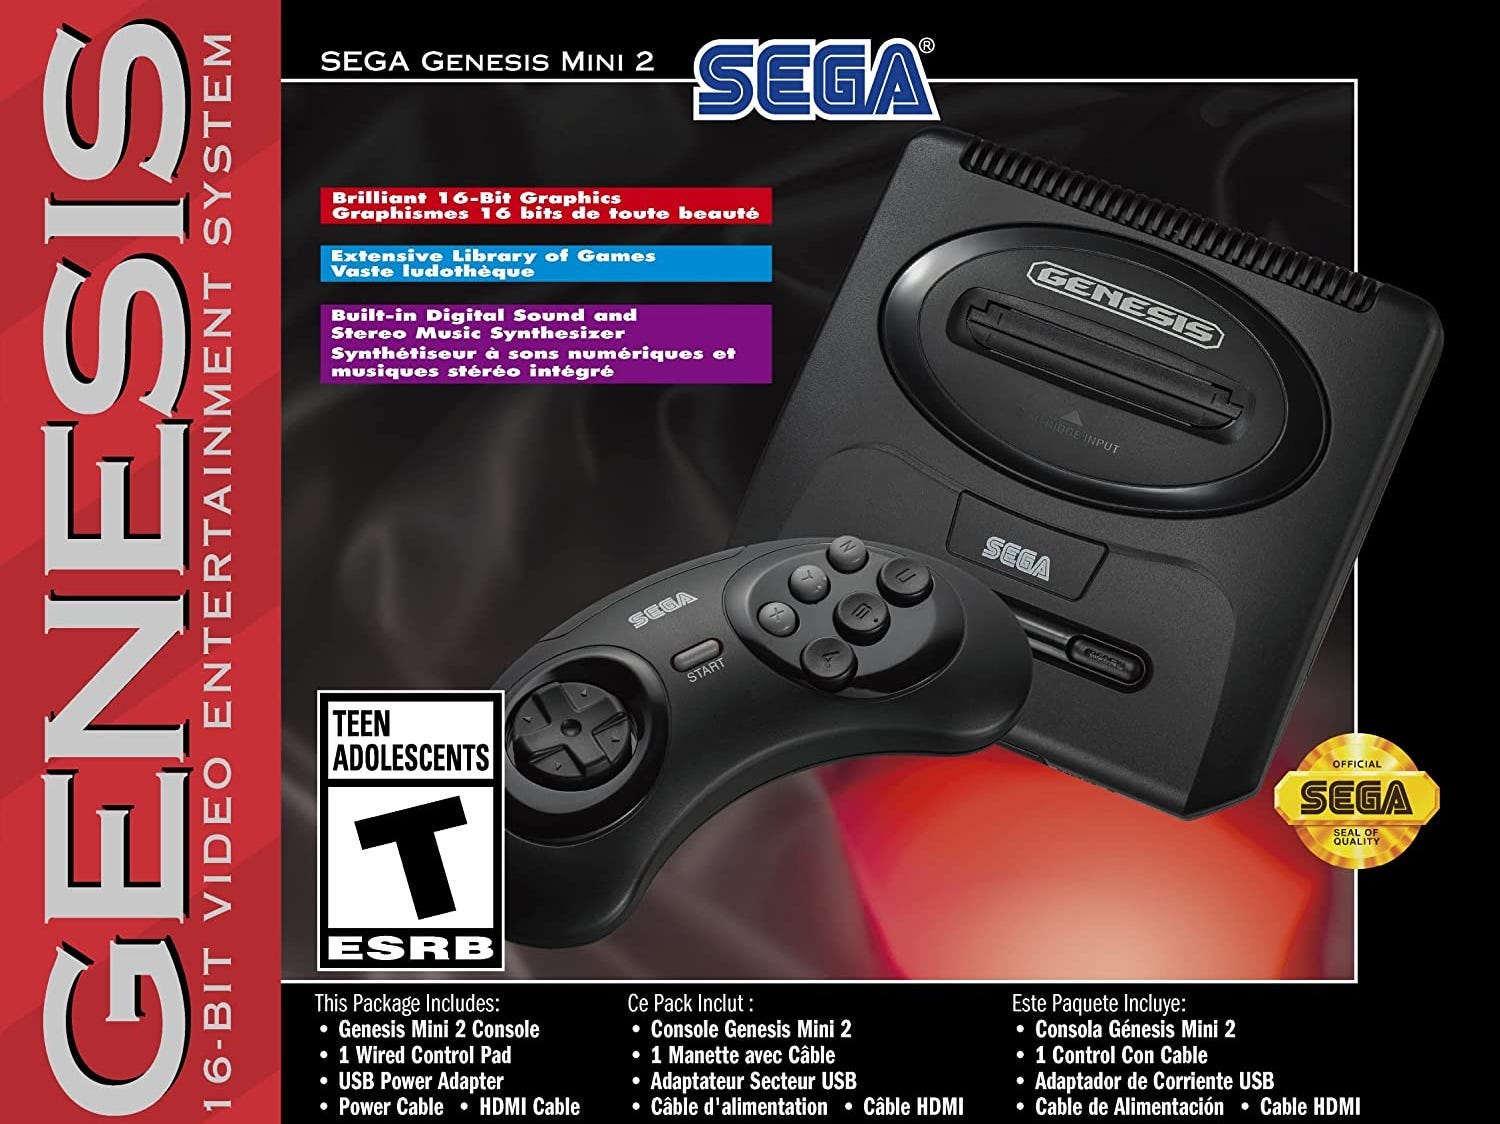 Scatola Sega Gensis Mini 2 con la console nella foto sul davanti